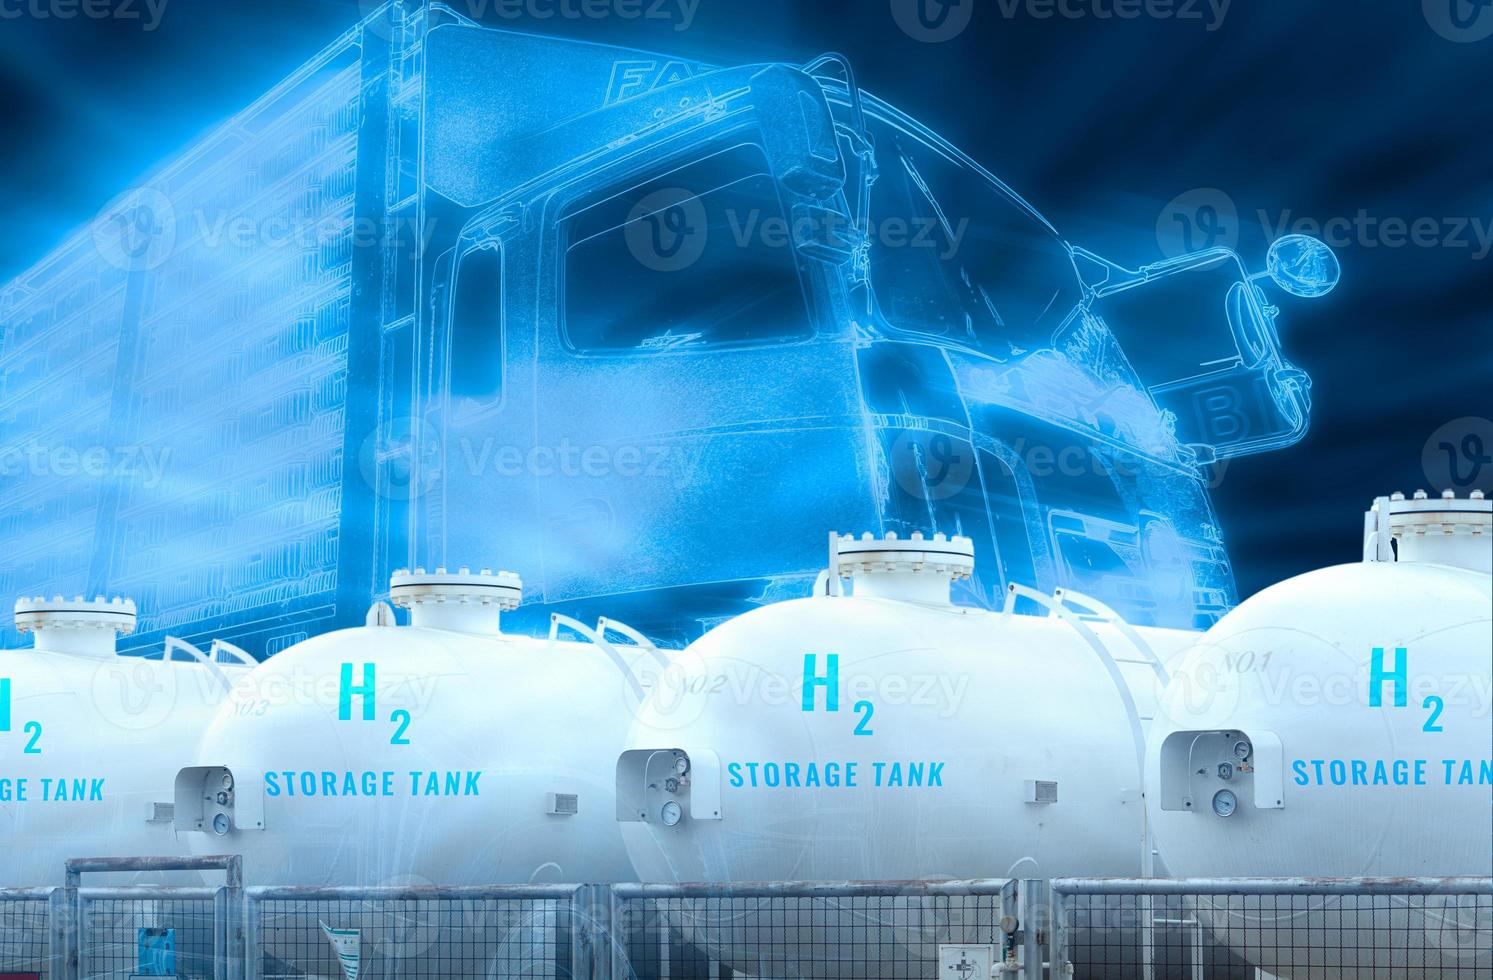 elektrisch vrachtauto met h2 brandstof opslagruimte tank. blauw waterstof concept. elektrisch voertuig aanhangwagen vrachtwagen. duurzame energie. netto nul uitstoot door 2050. reclame logistiek vrachtauto vervoer met groen stroom. foto